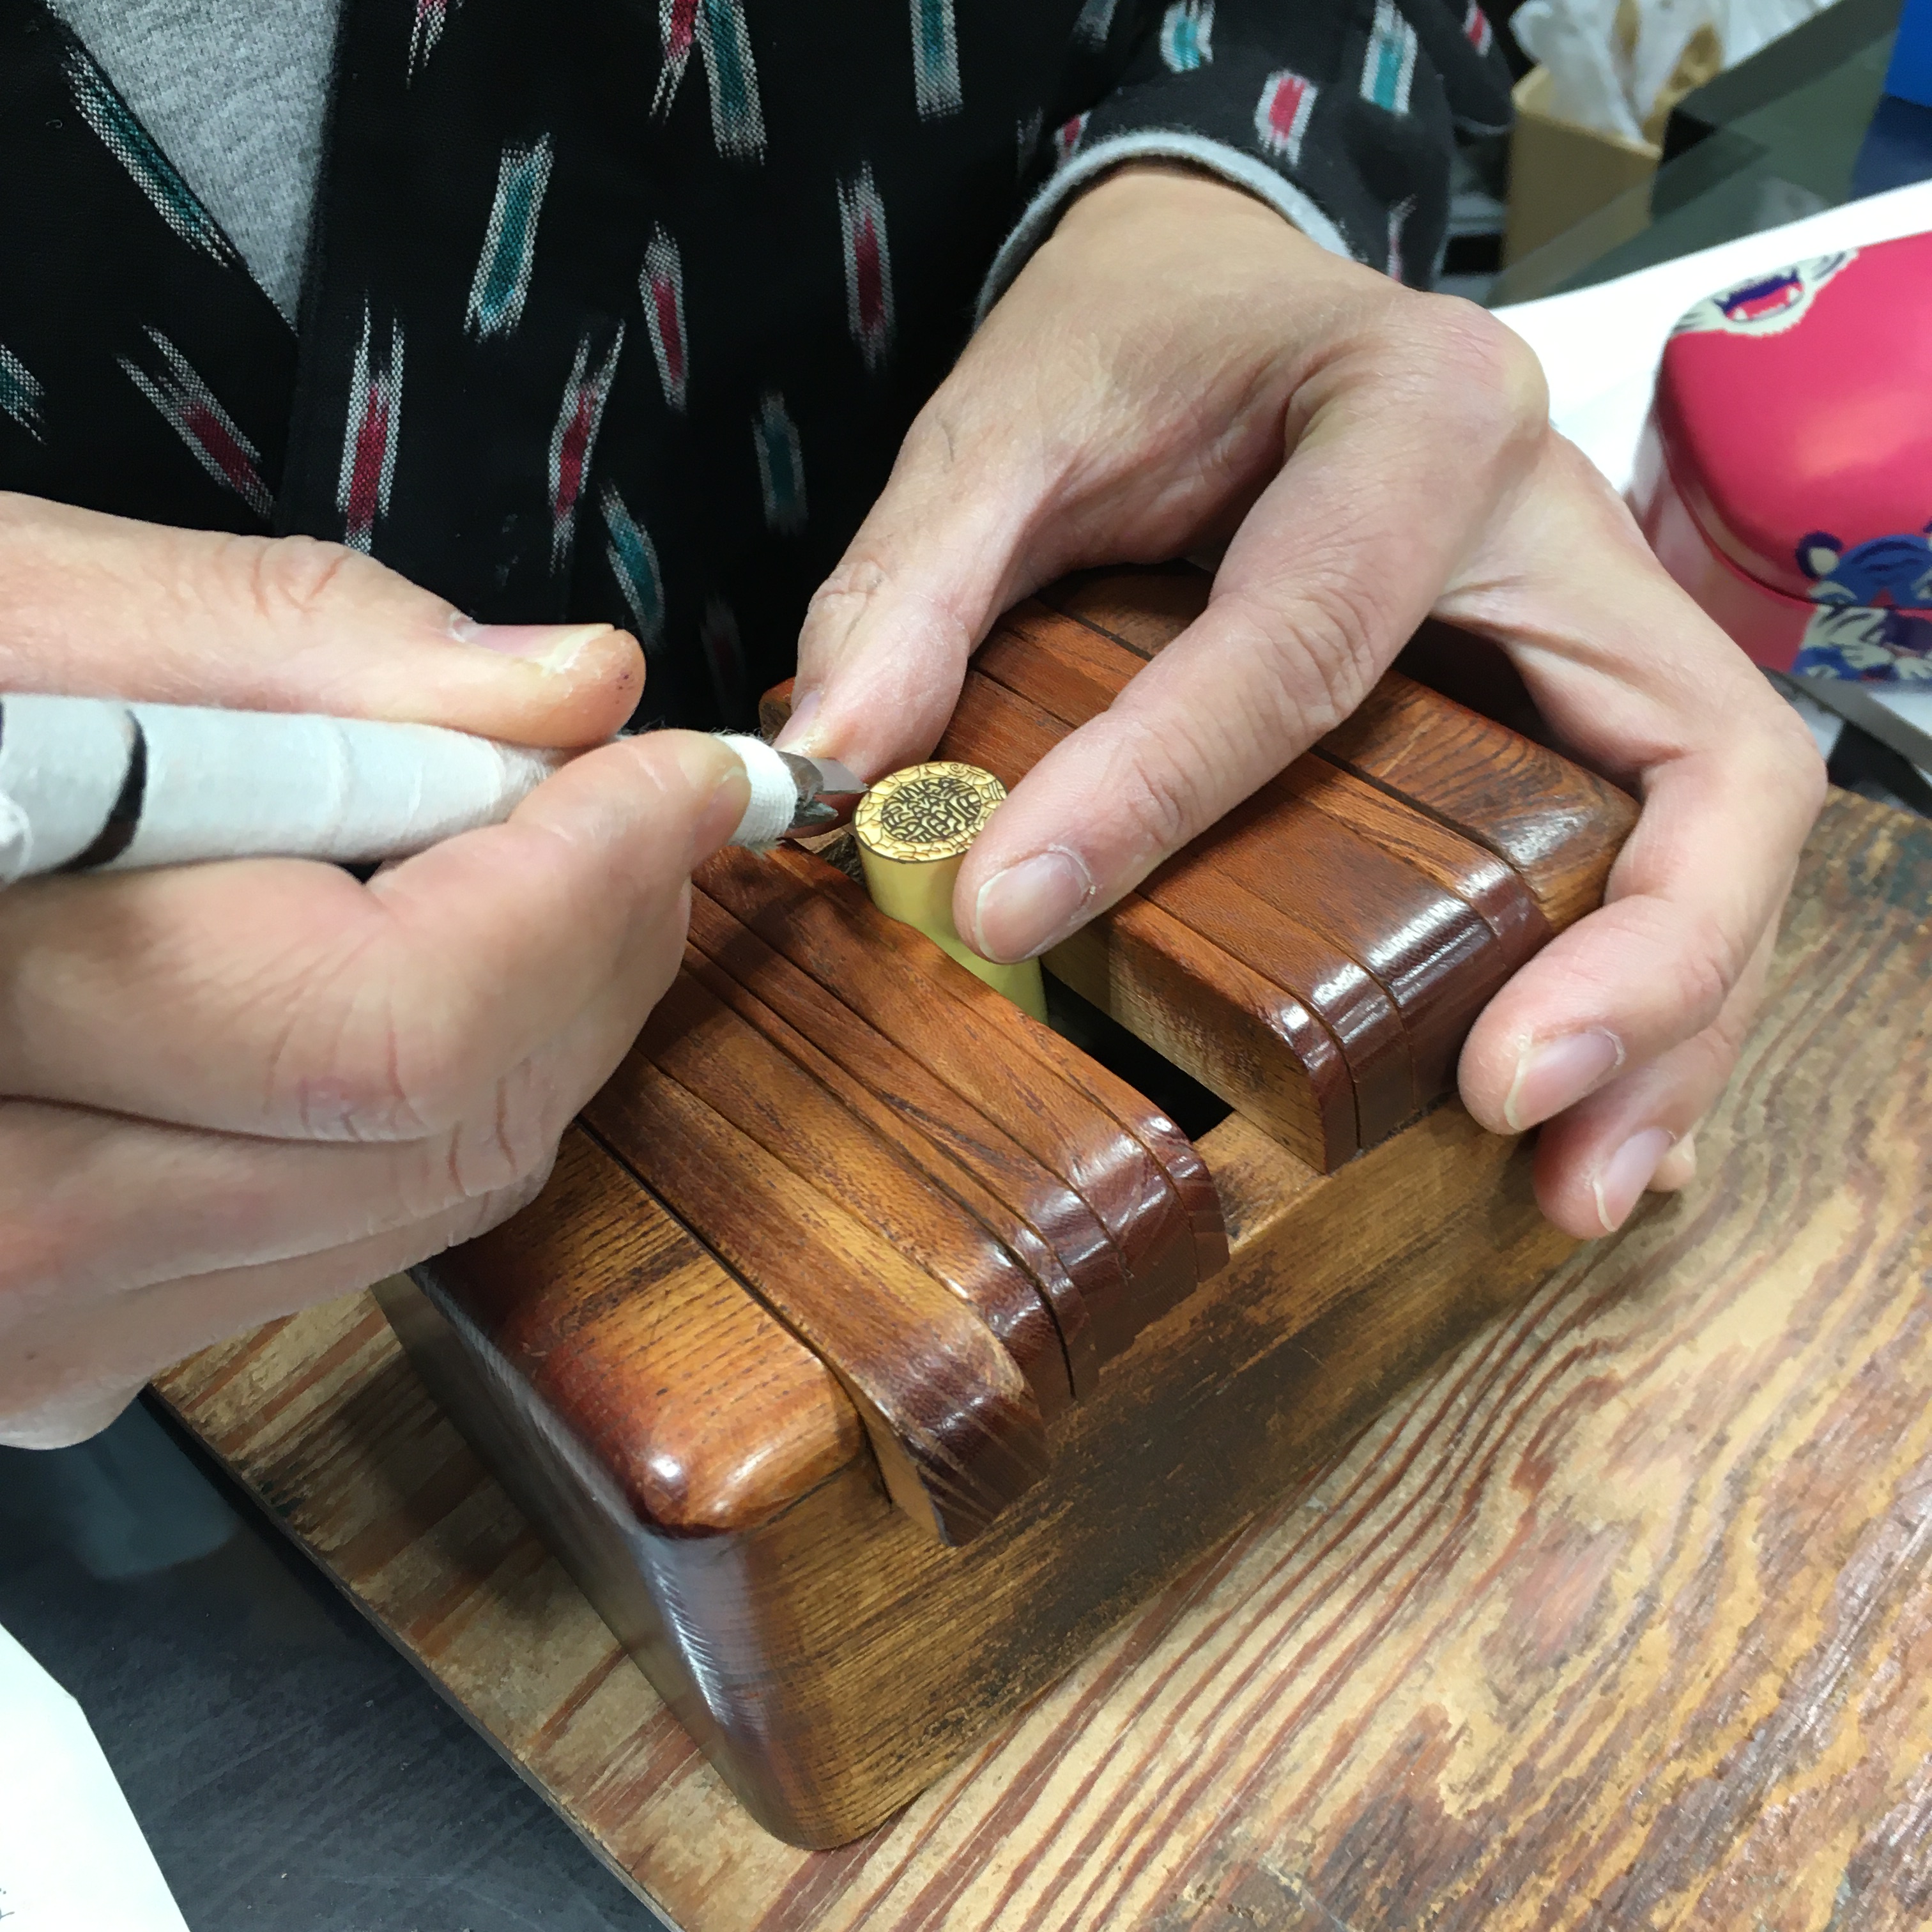 明治神宮近く 裏原宿 の手彫りはんこ屋さん 渋谷荒見ハンコ店 シルクblog